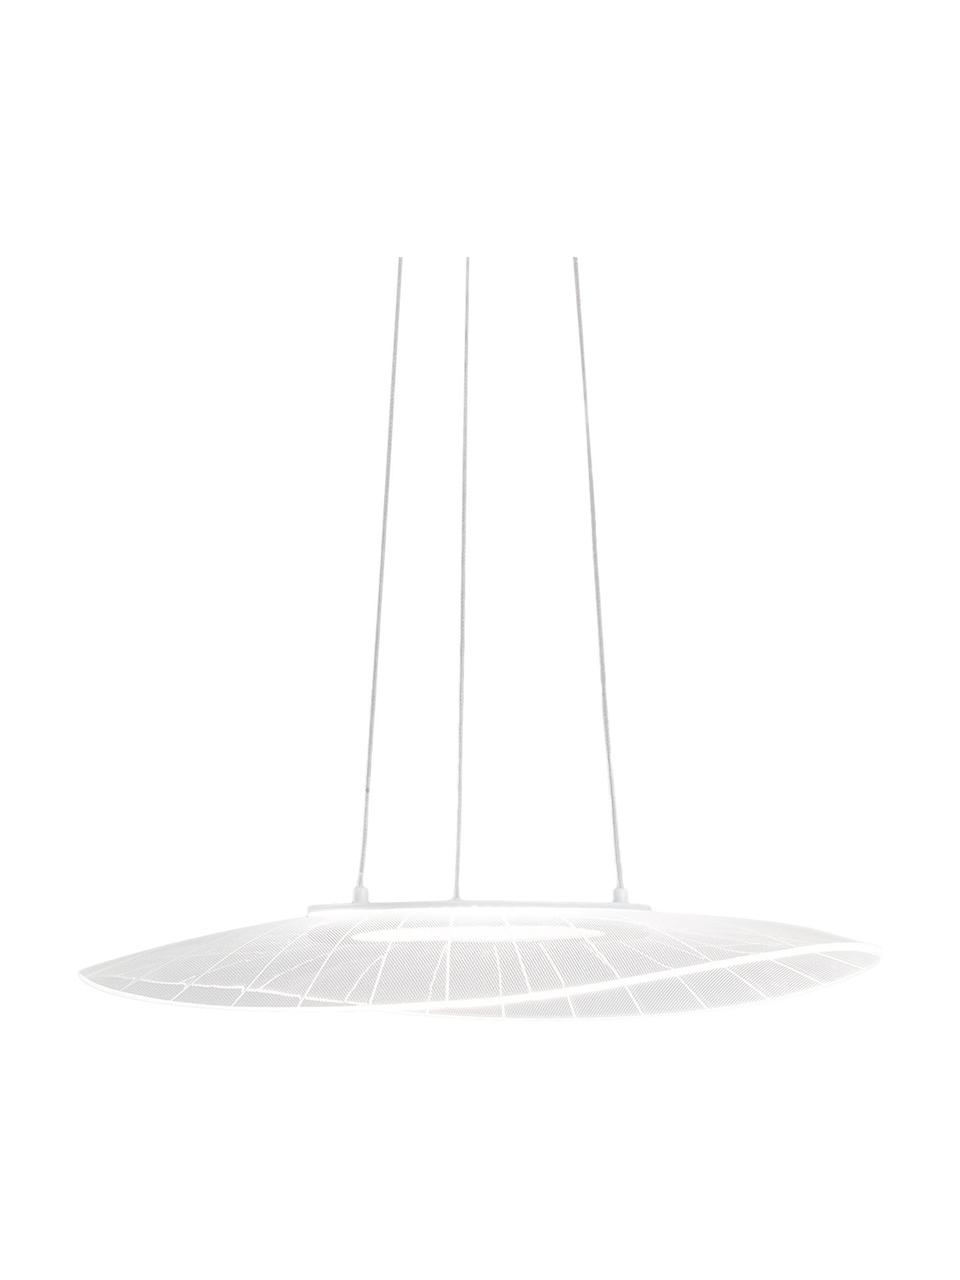 Design LED-Pendelleuchte Vela, Lampenschirm: Metall, Methacrylat, Baldachin: Metall, beschichtet, Weiß, B 59 x T 43 cm